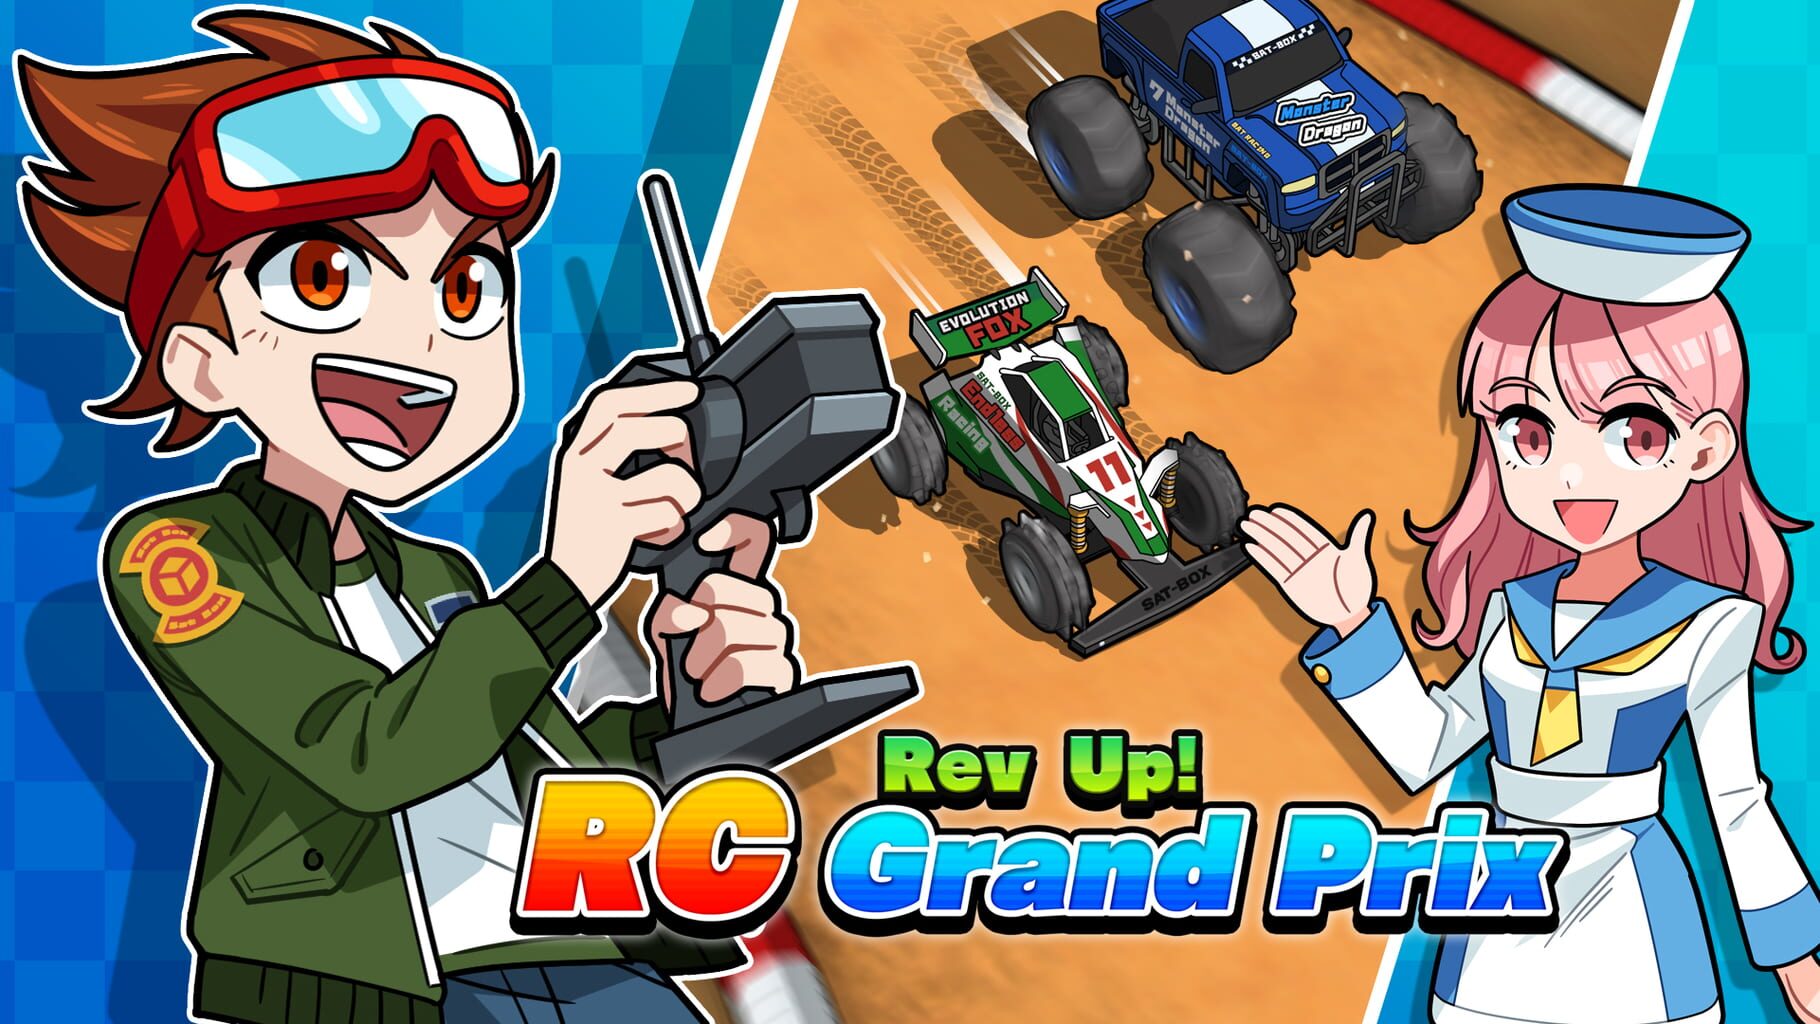 Rev Up! RC Grand Prix artwork